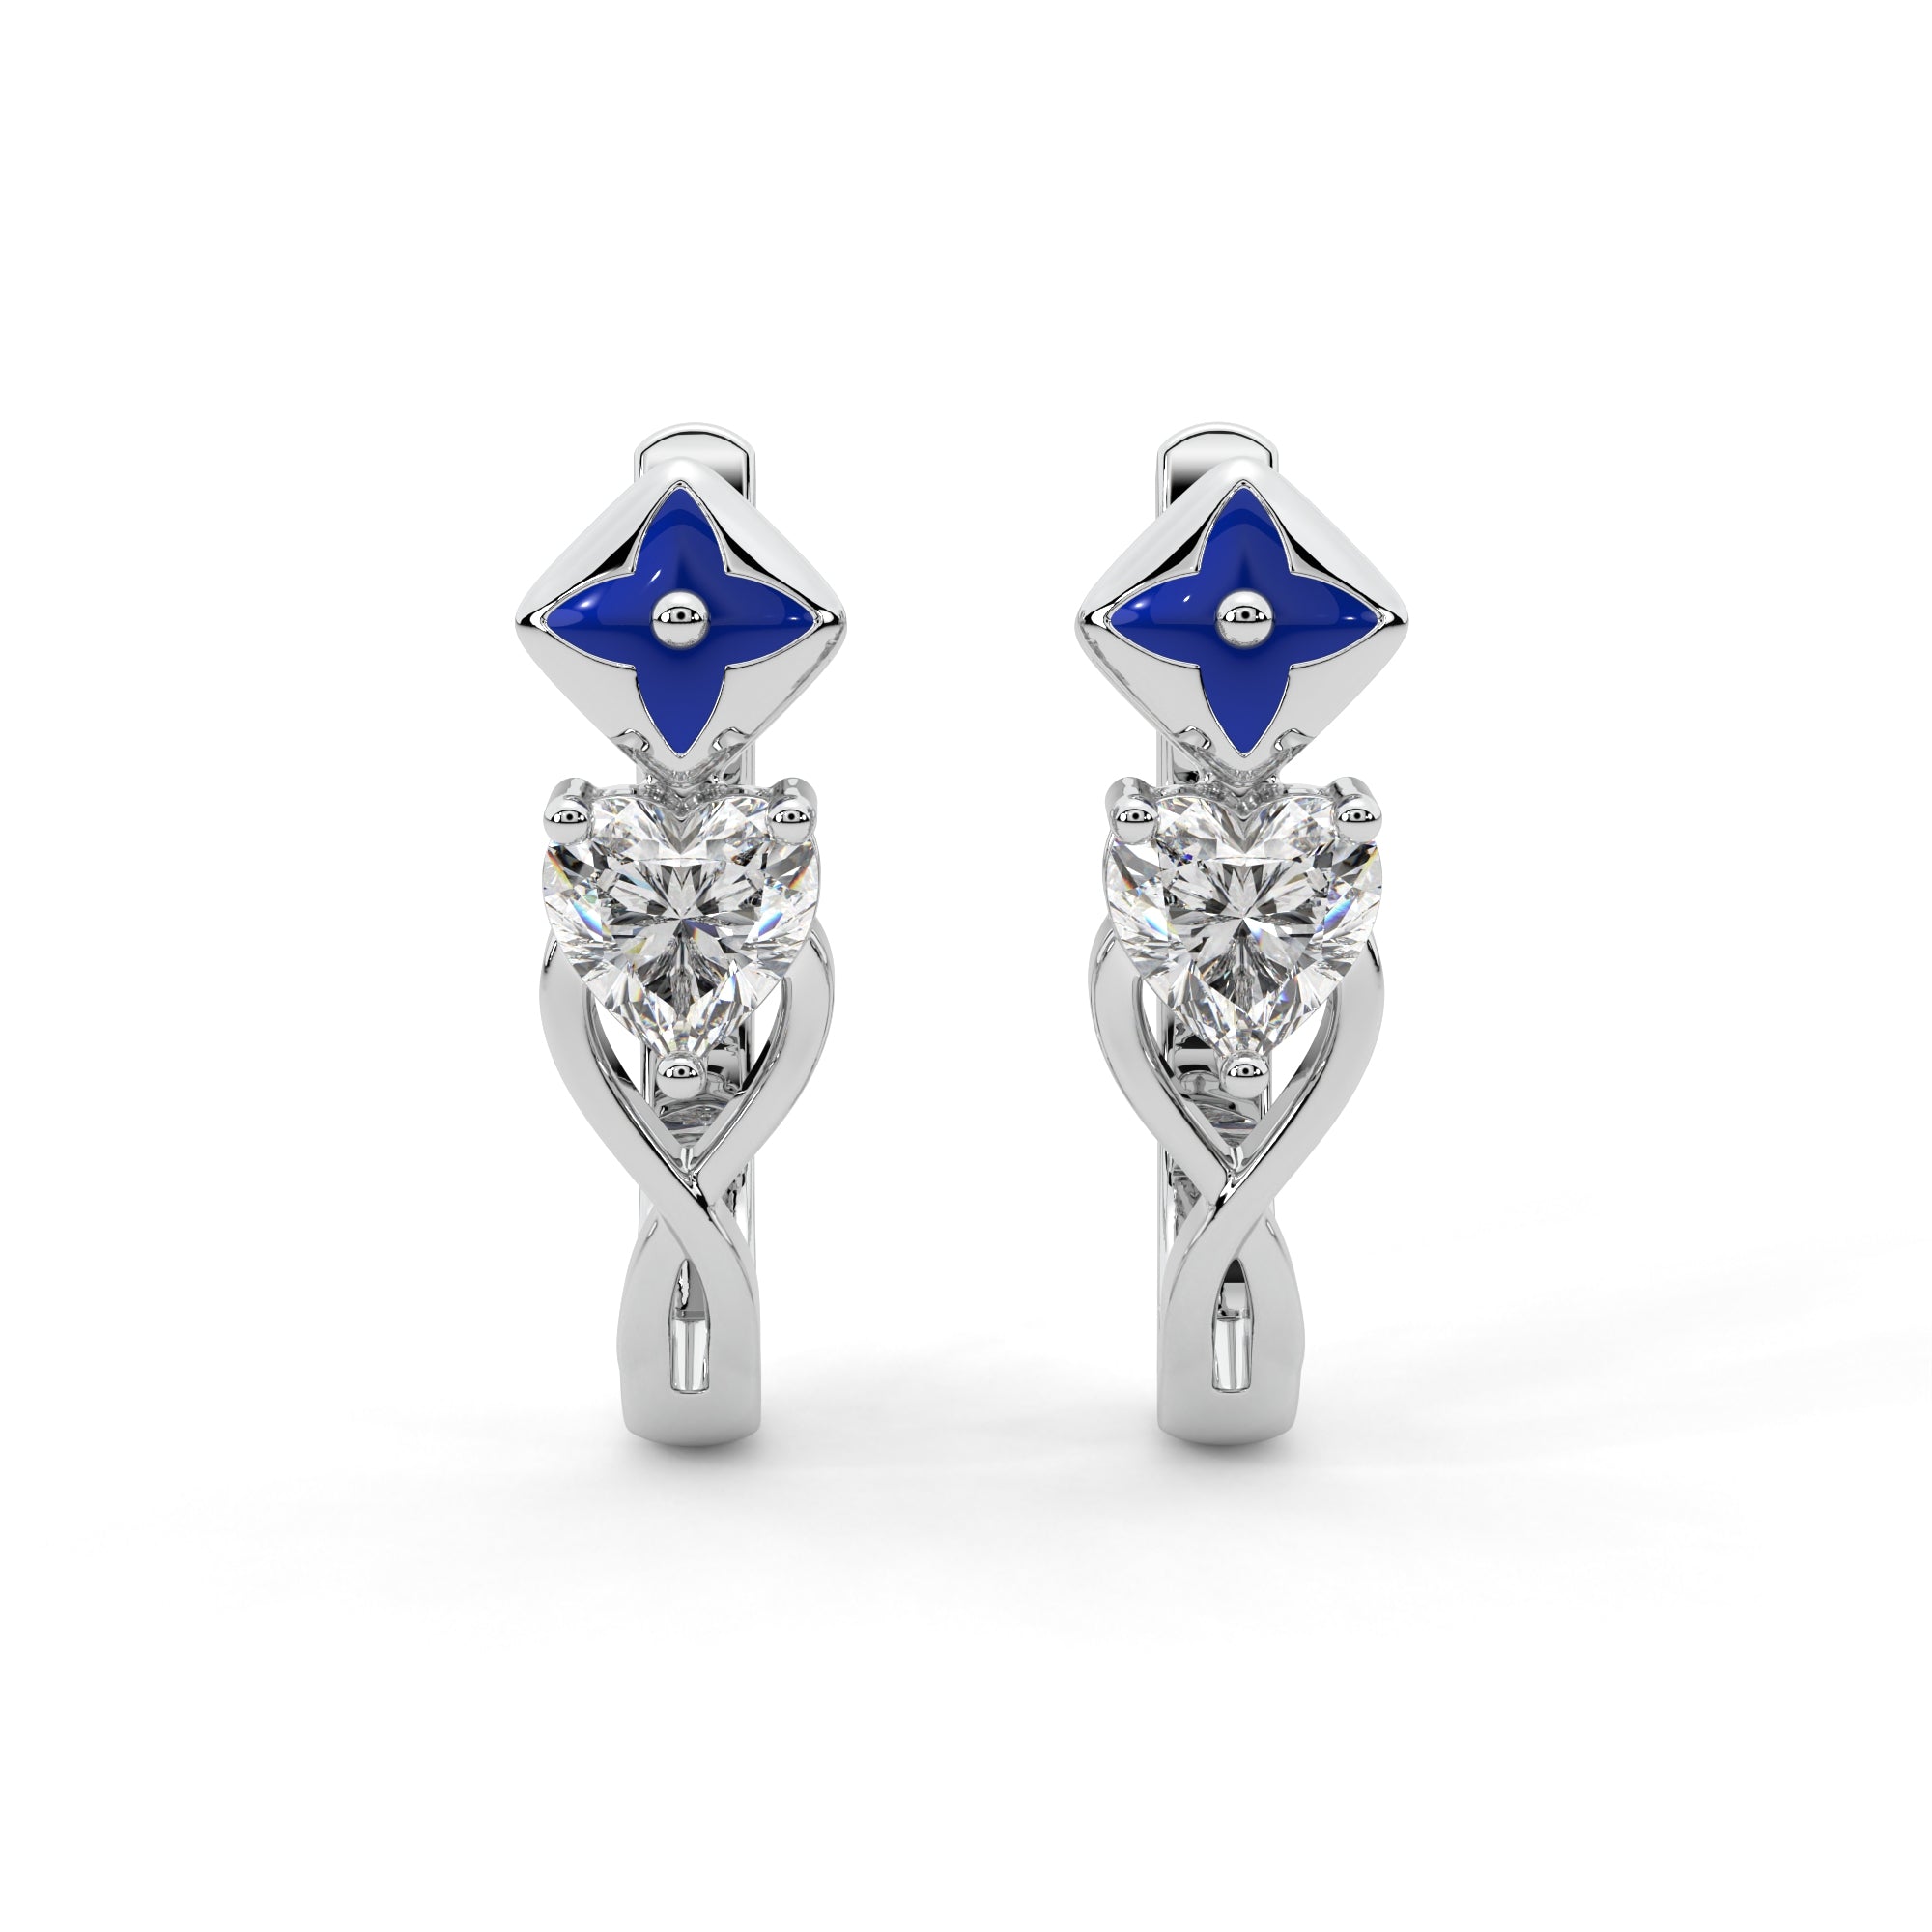 Starlit Heart Diamond Earrings